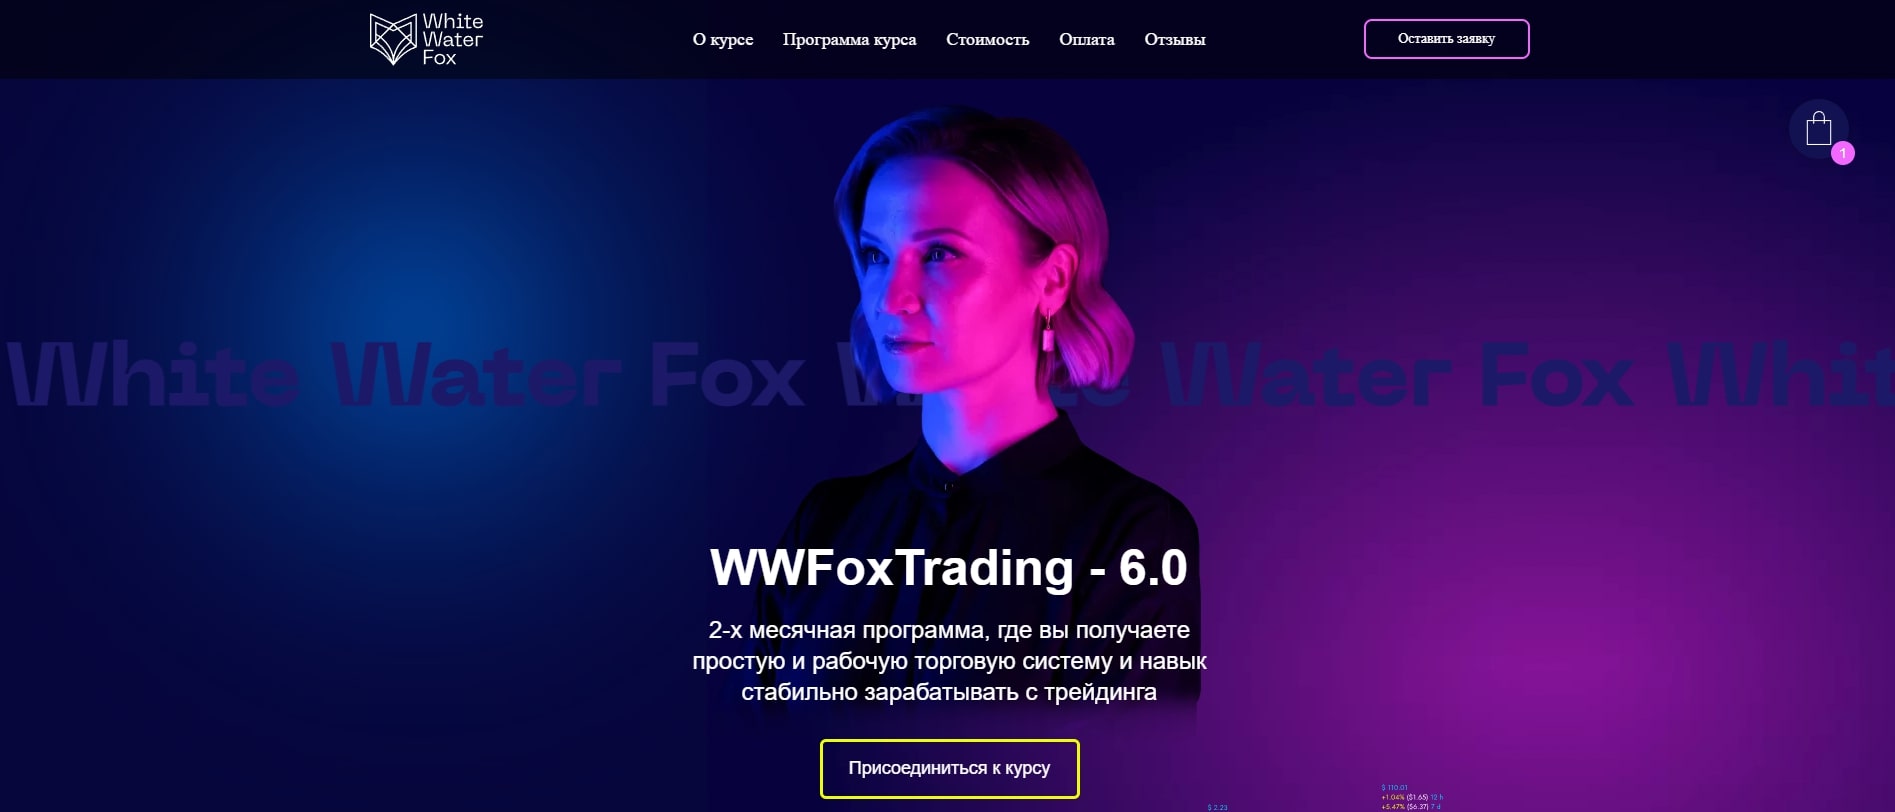 Юлия Пономарева — трейдер и создательница канала WWFox в Телеграм